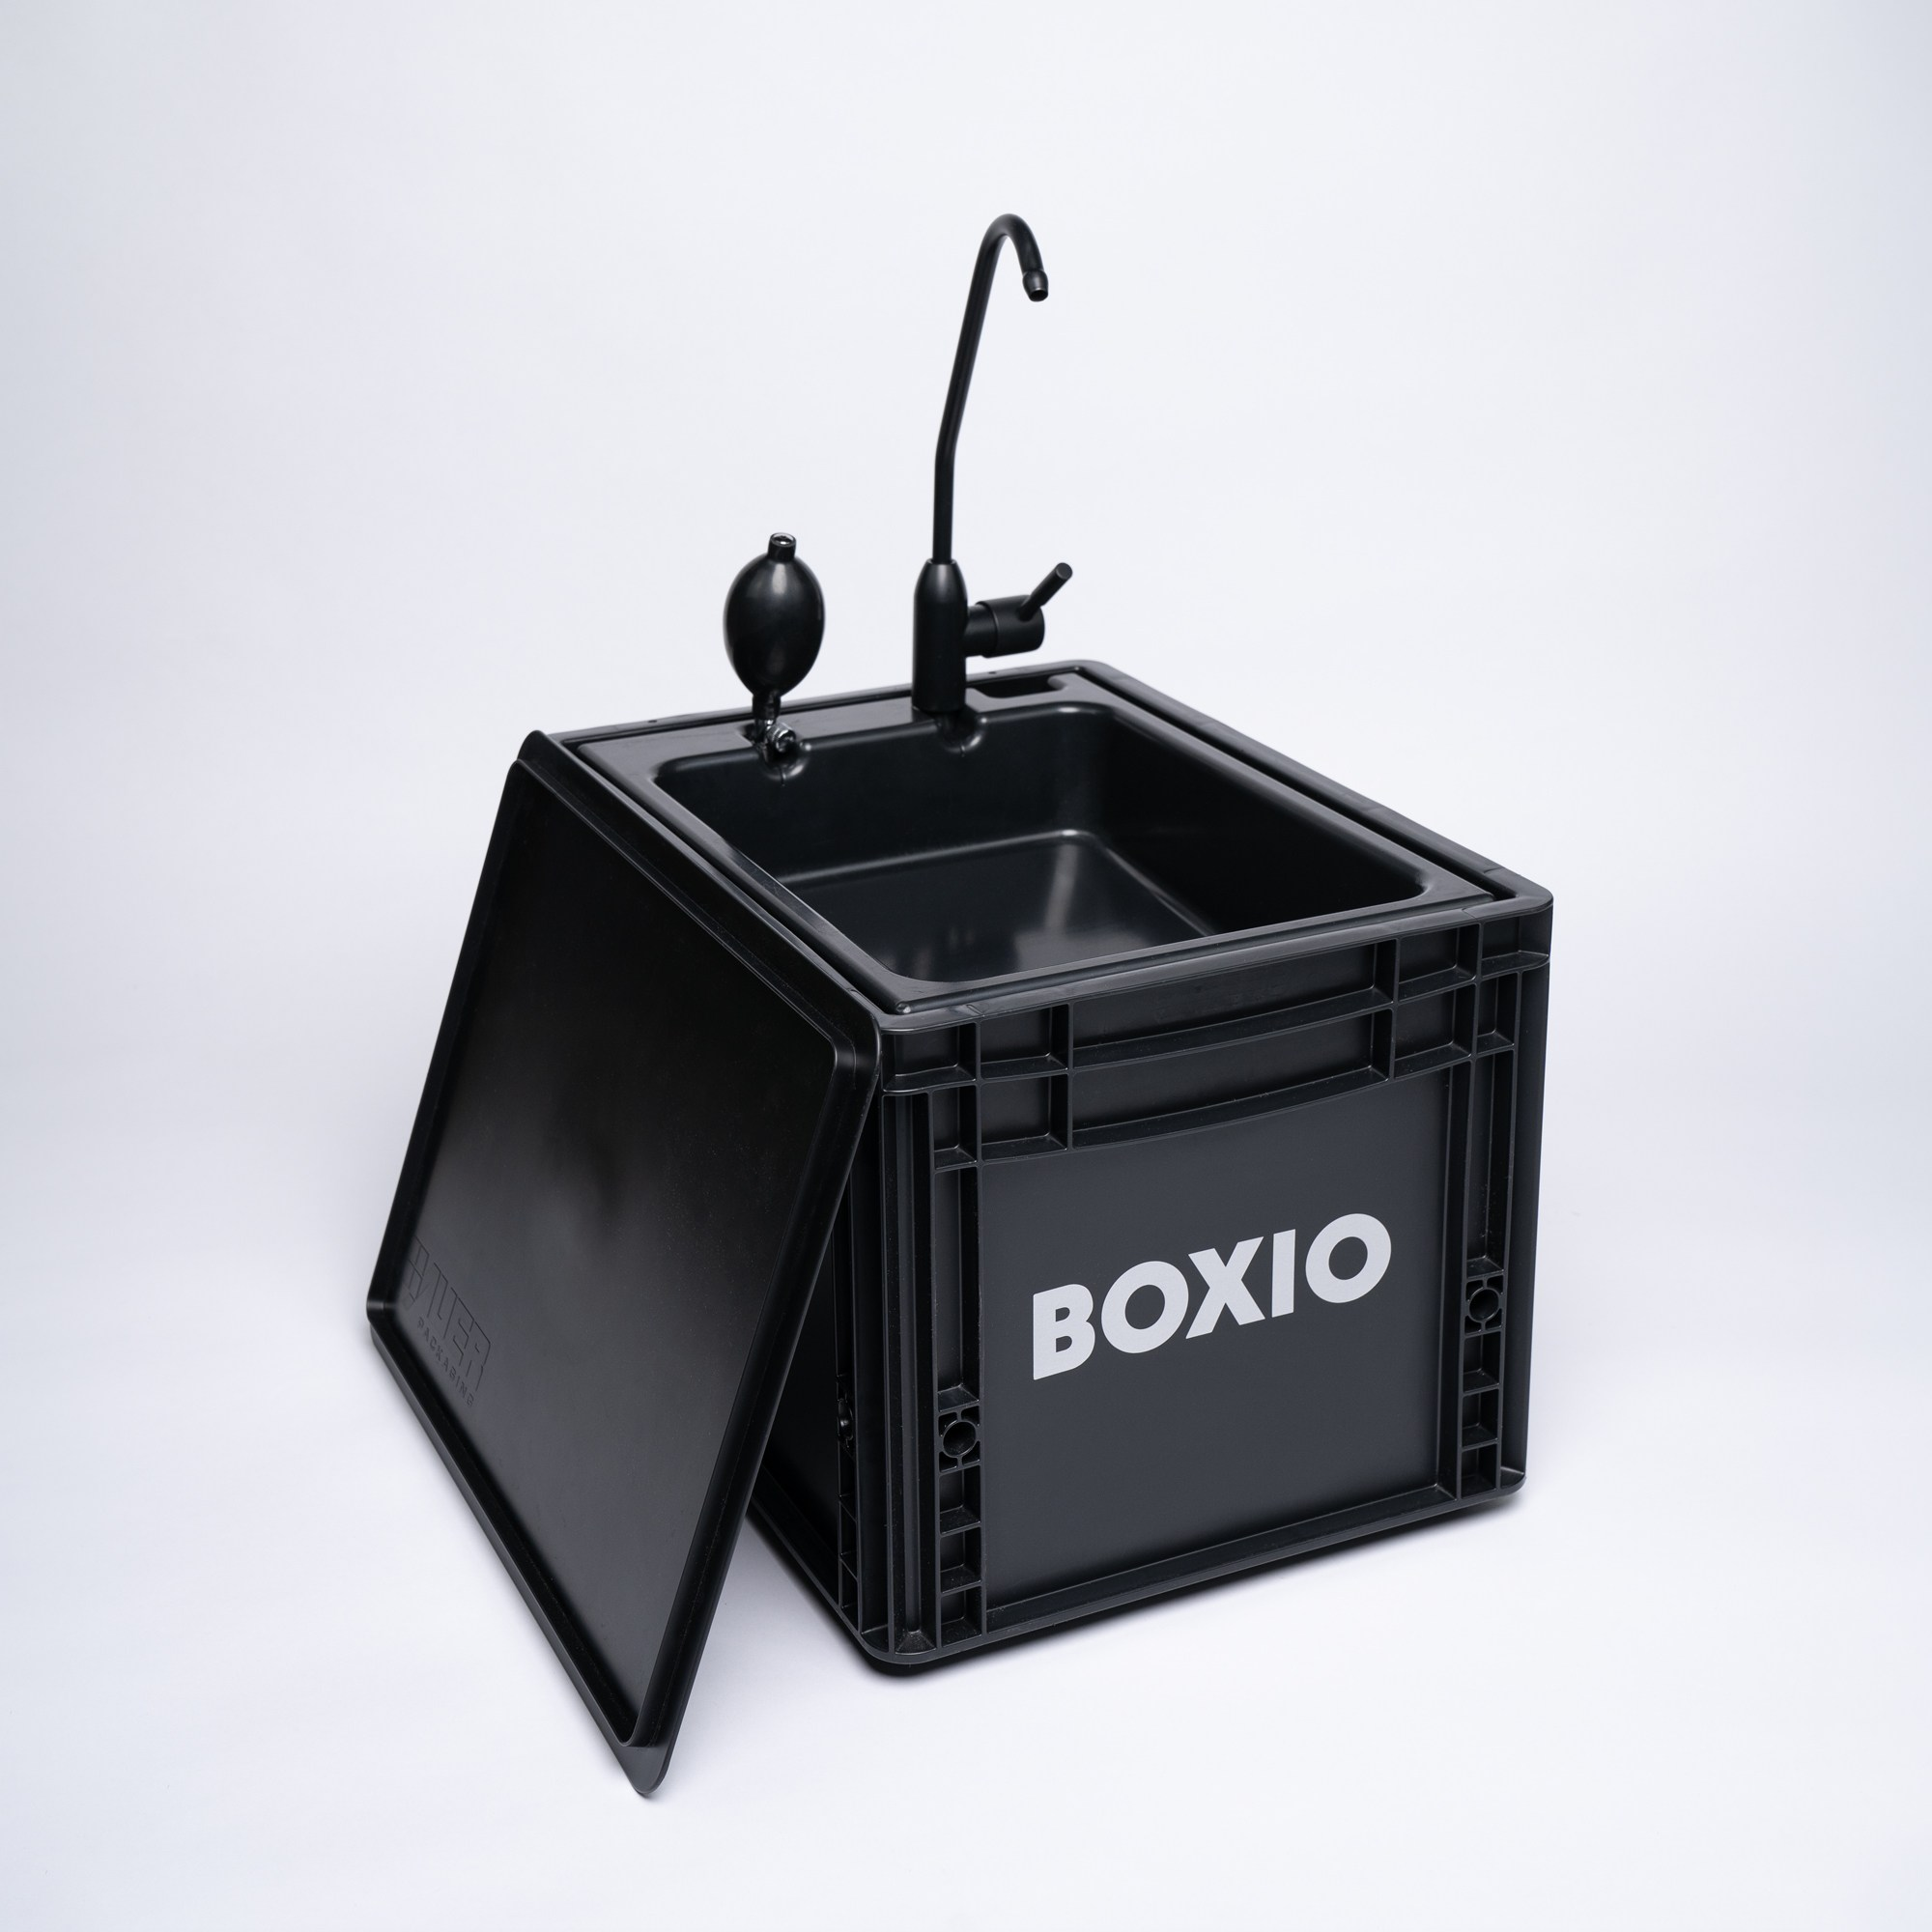 BOXIO-Wash Komplettansicht: schwarze Eurobox mit umgeklapptem Deckel, Pumpe und Wasserhahn